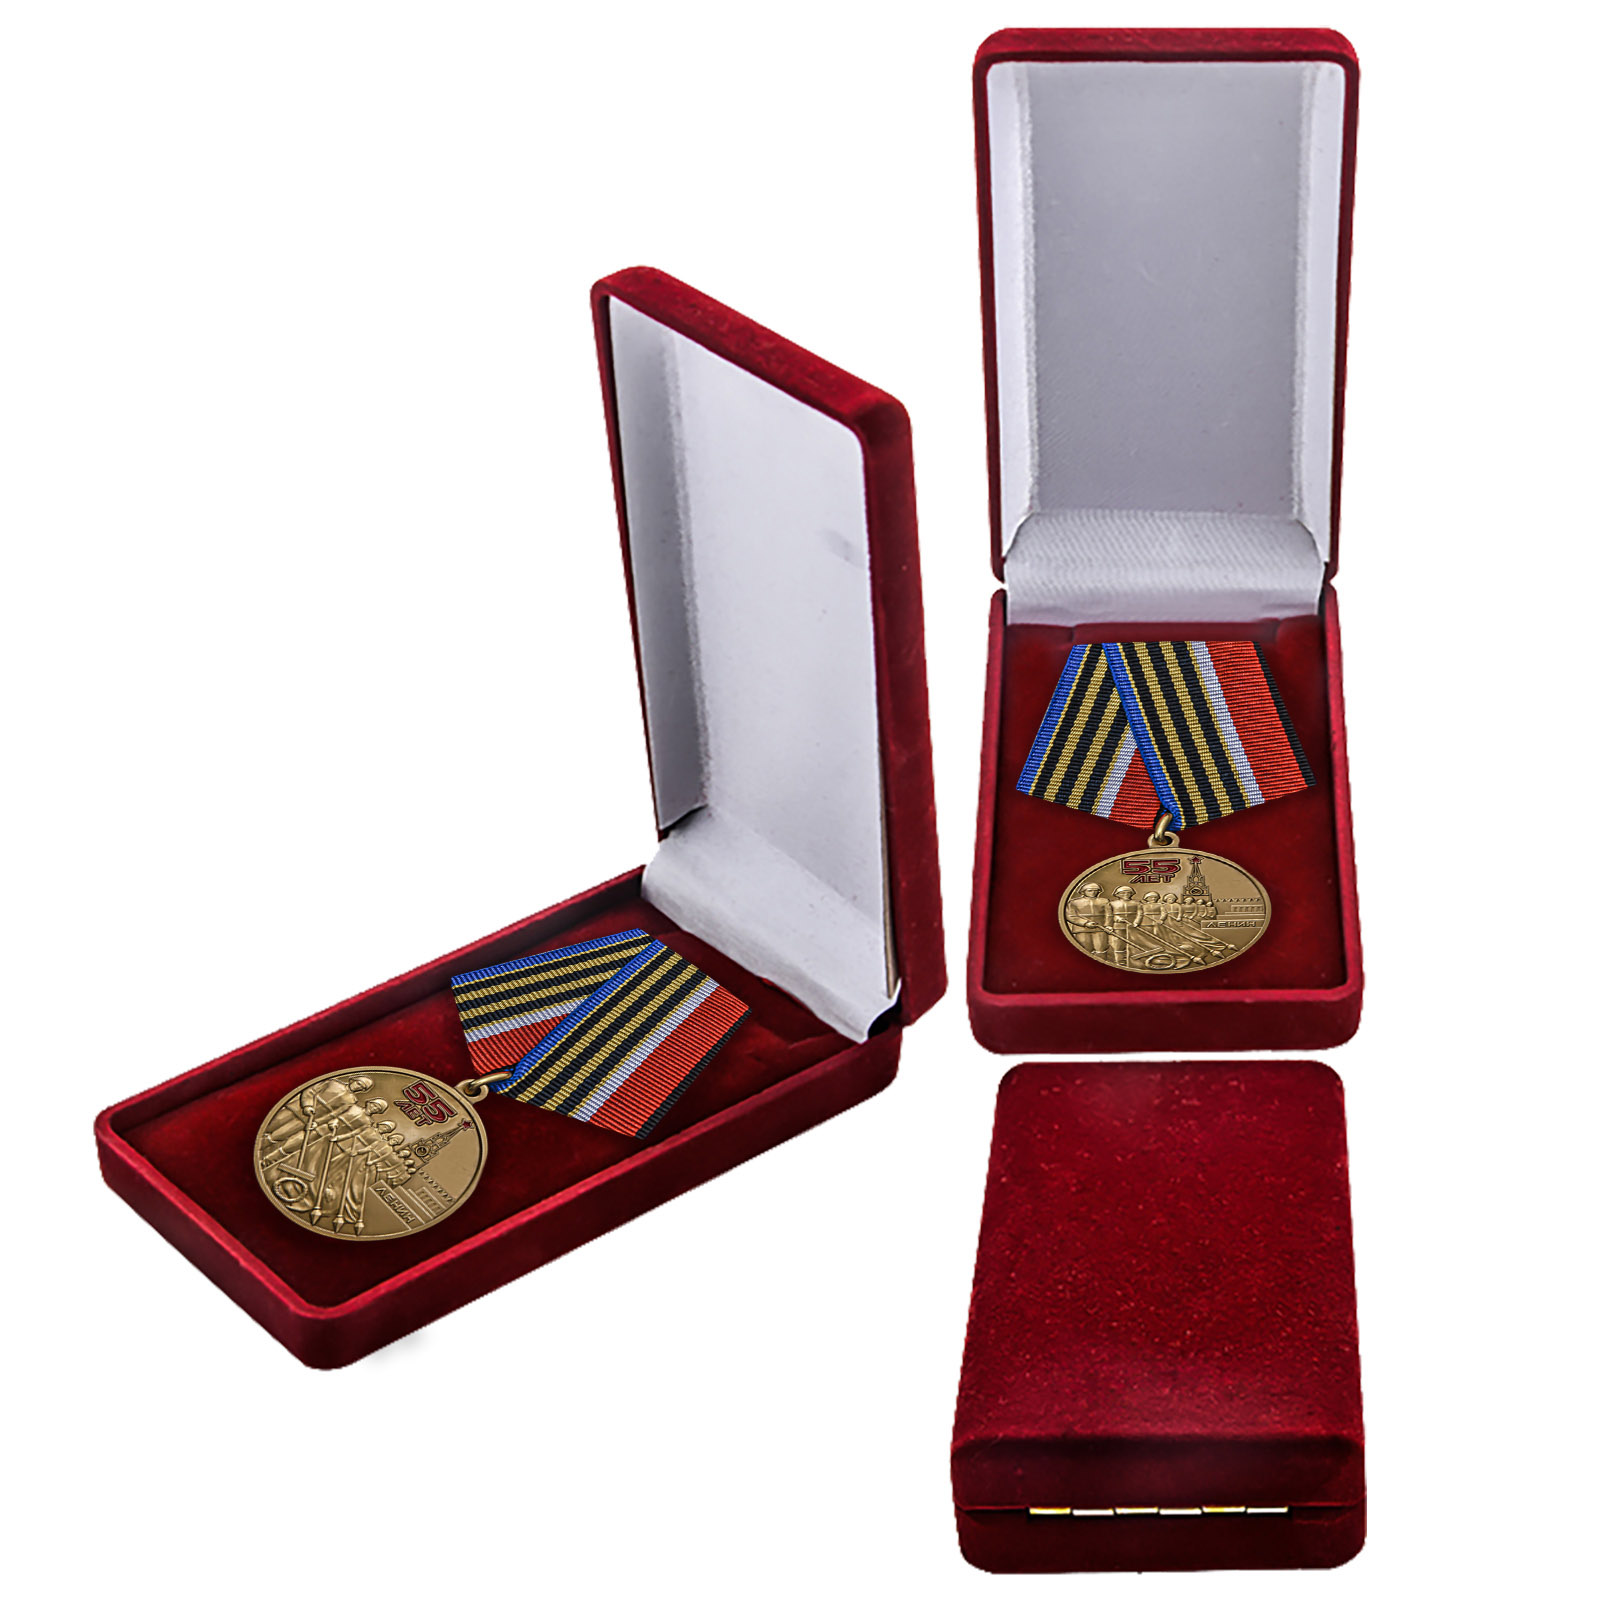 Купить медаль 55 лет Победы советского народа в Великой Отечественной войне 1941-1945 гг. в подарок